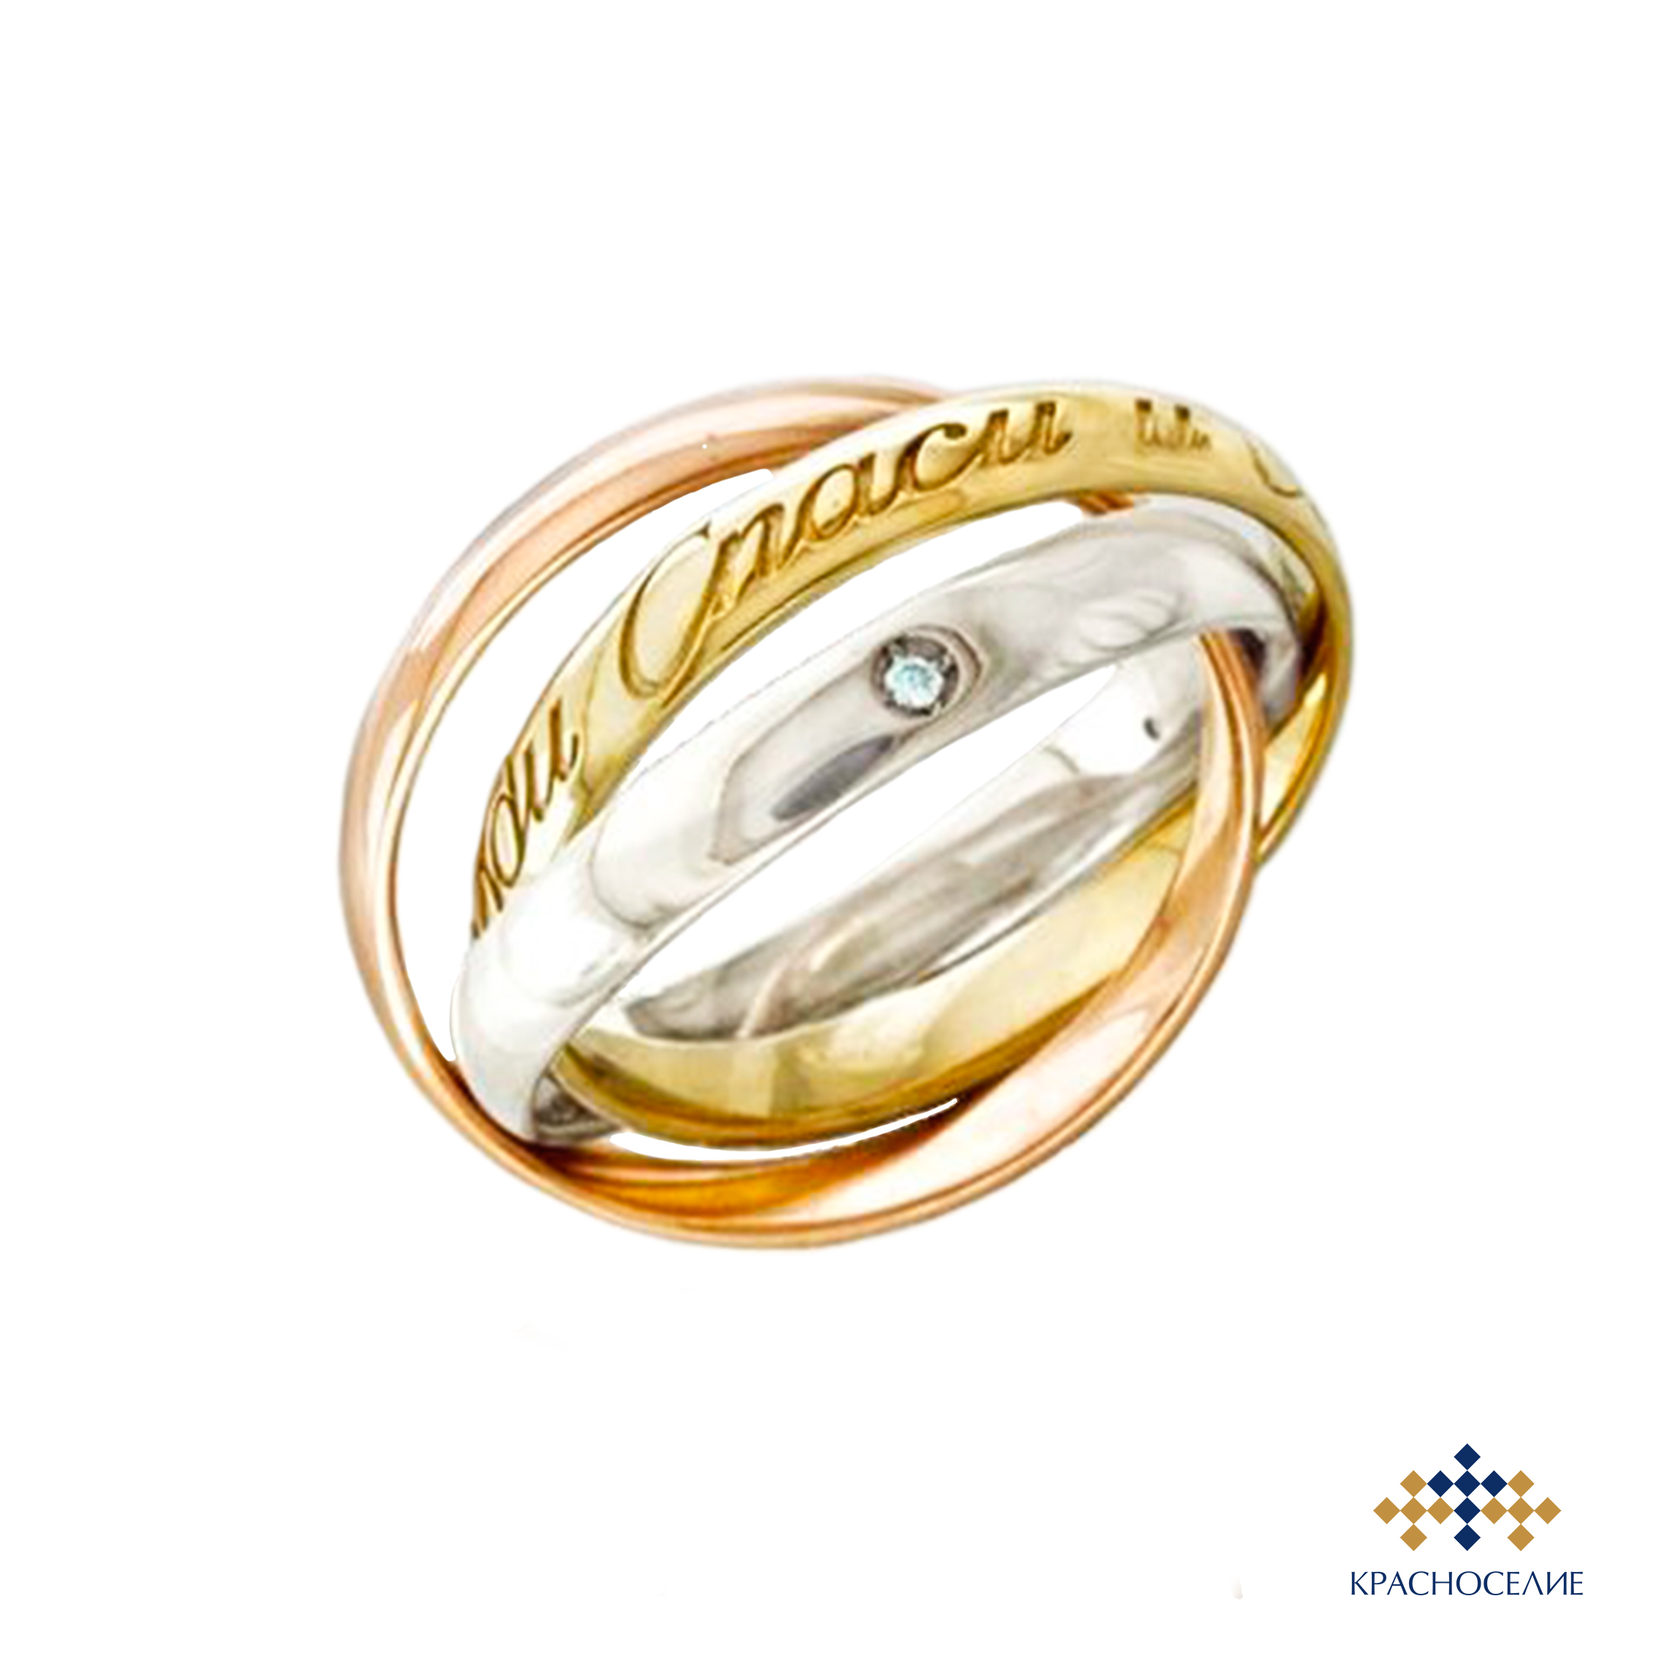 Кольцо Тринити золото 585